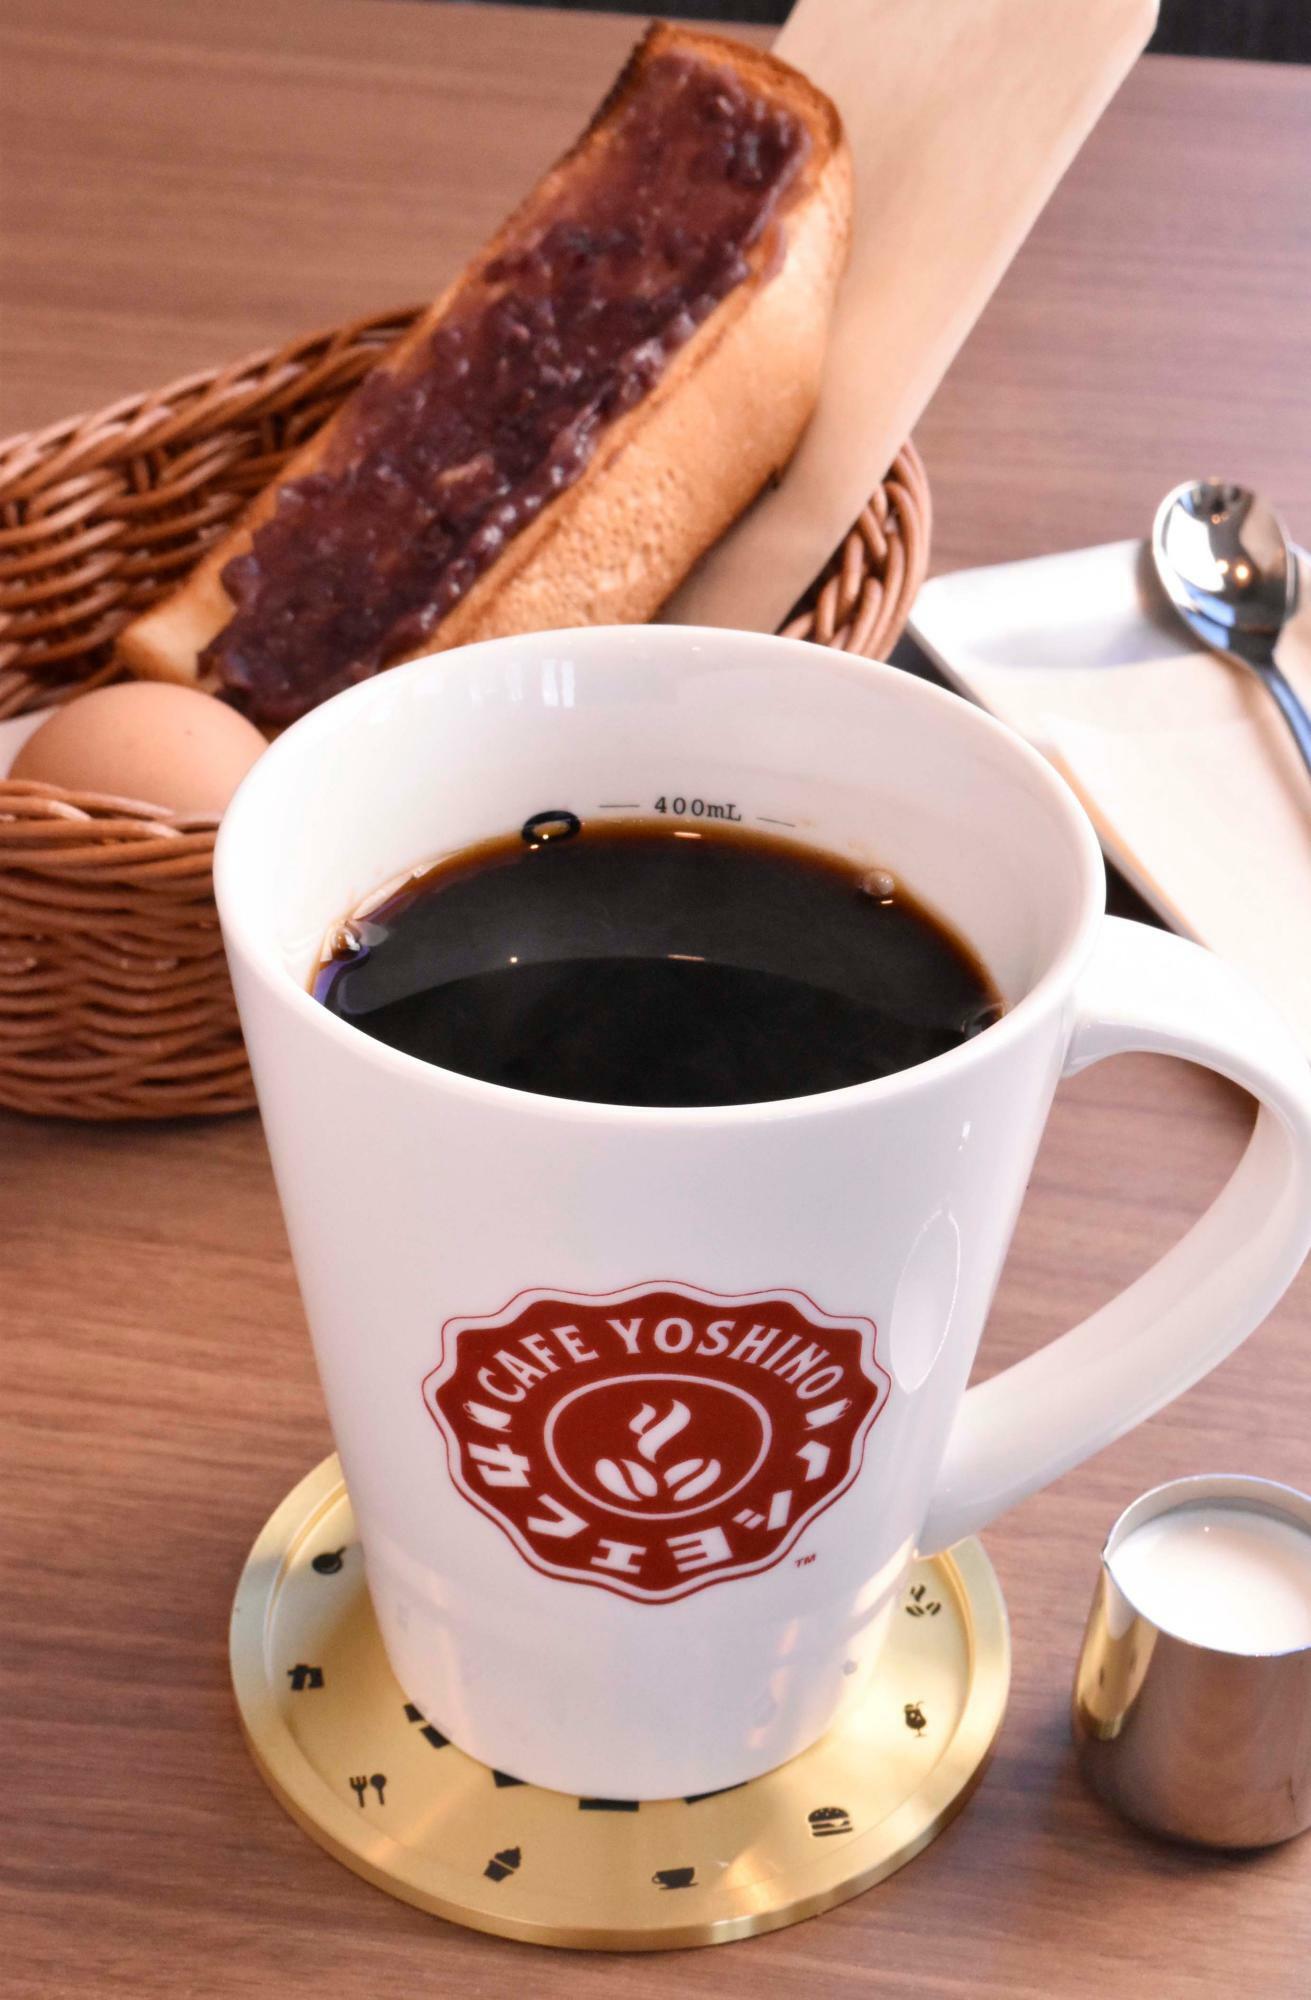 名古屋喫茶の代名詞ともいうべきモーニングサービスももちろんあり。ドリンク代+0円でトースト、ゆで玉子がつく。写真はブレンド珈琲、レギュラーの2・3倍のデラサイズ680円